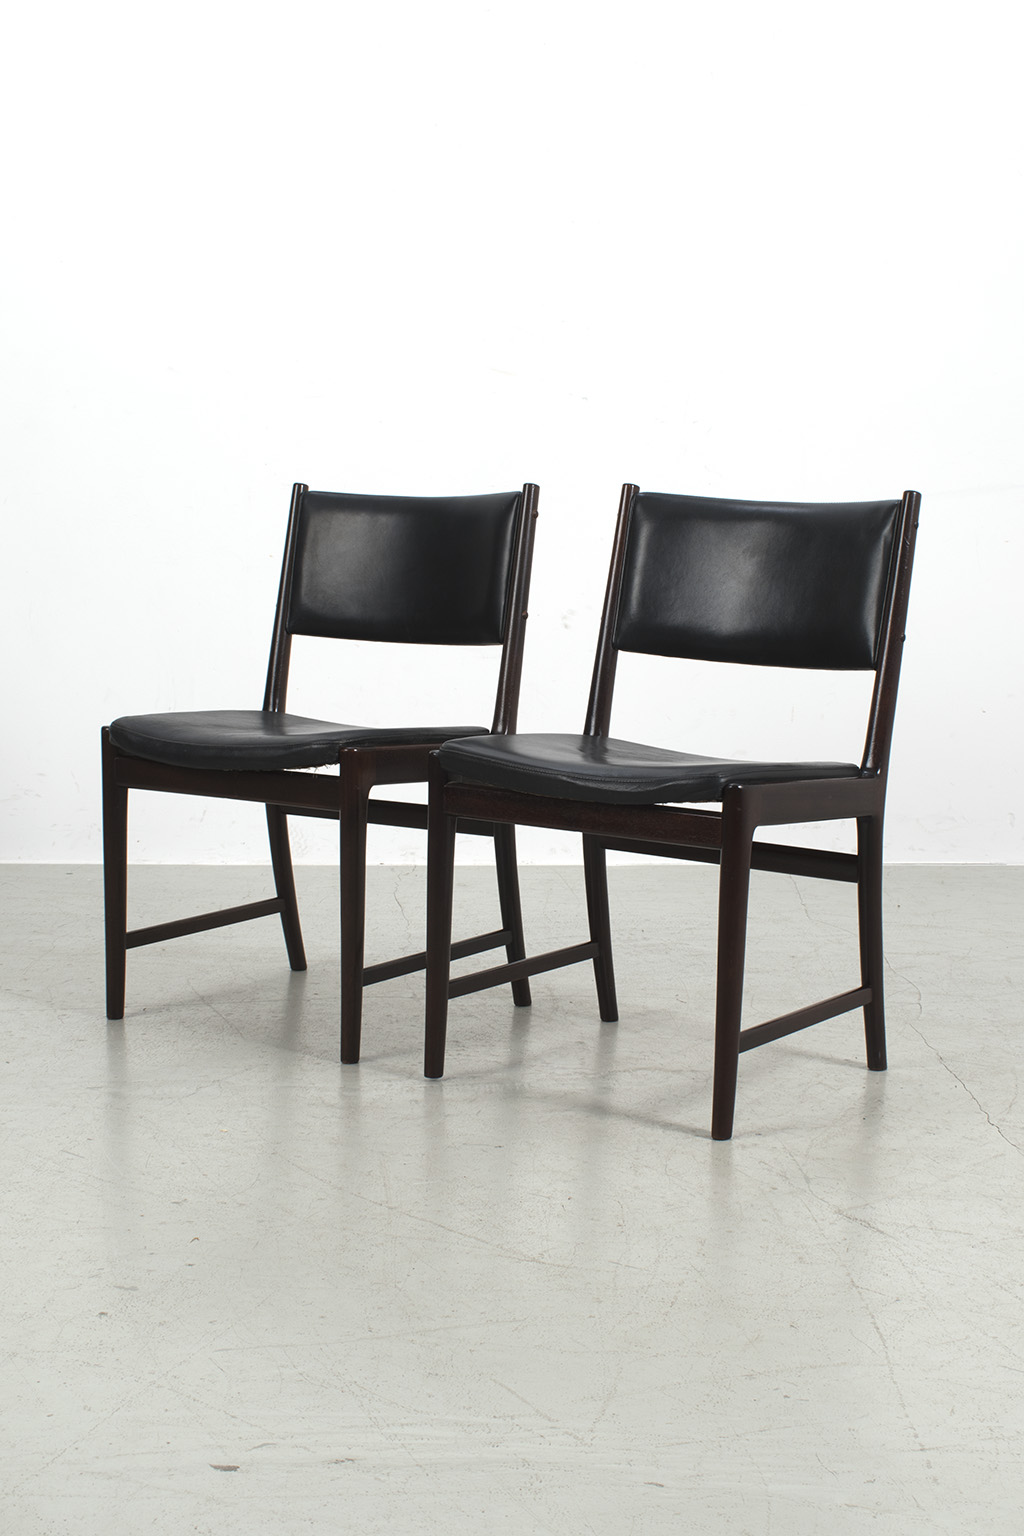 Two Kai Lyngfeldt Larsen chairs